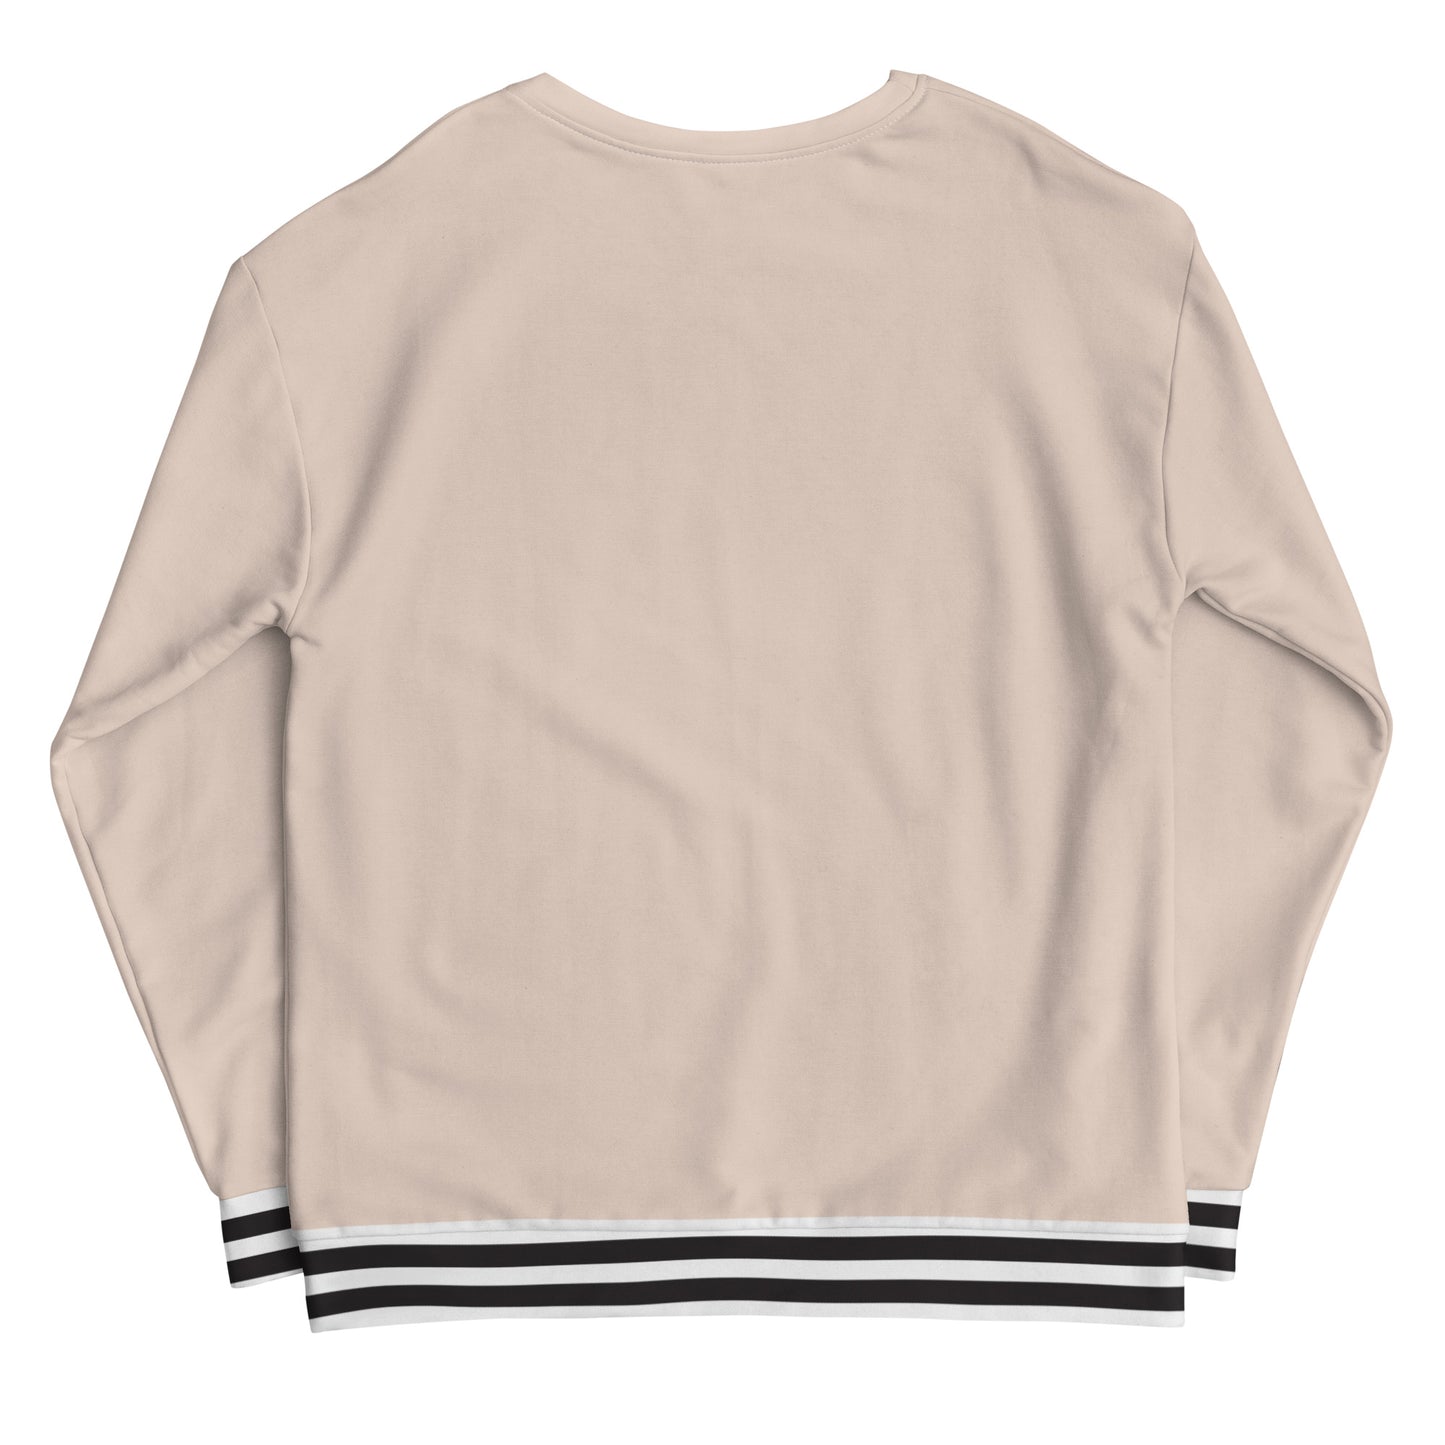 Basic Lines - Sustainably Made Sweatshirt